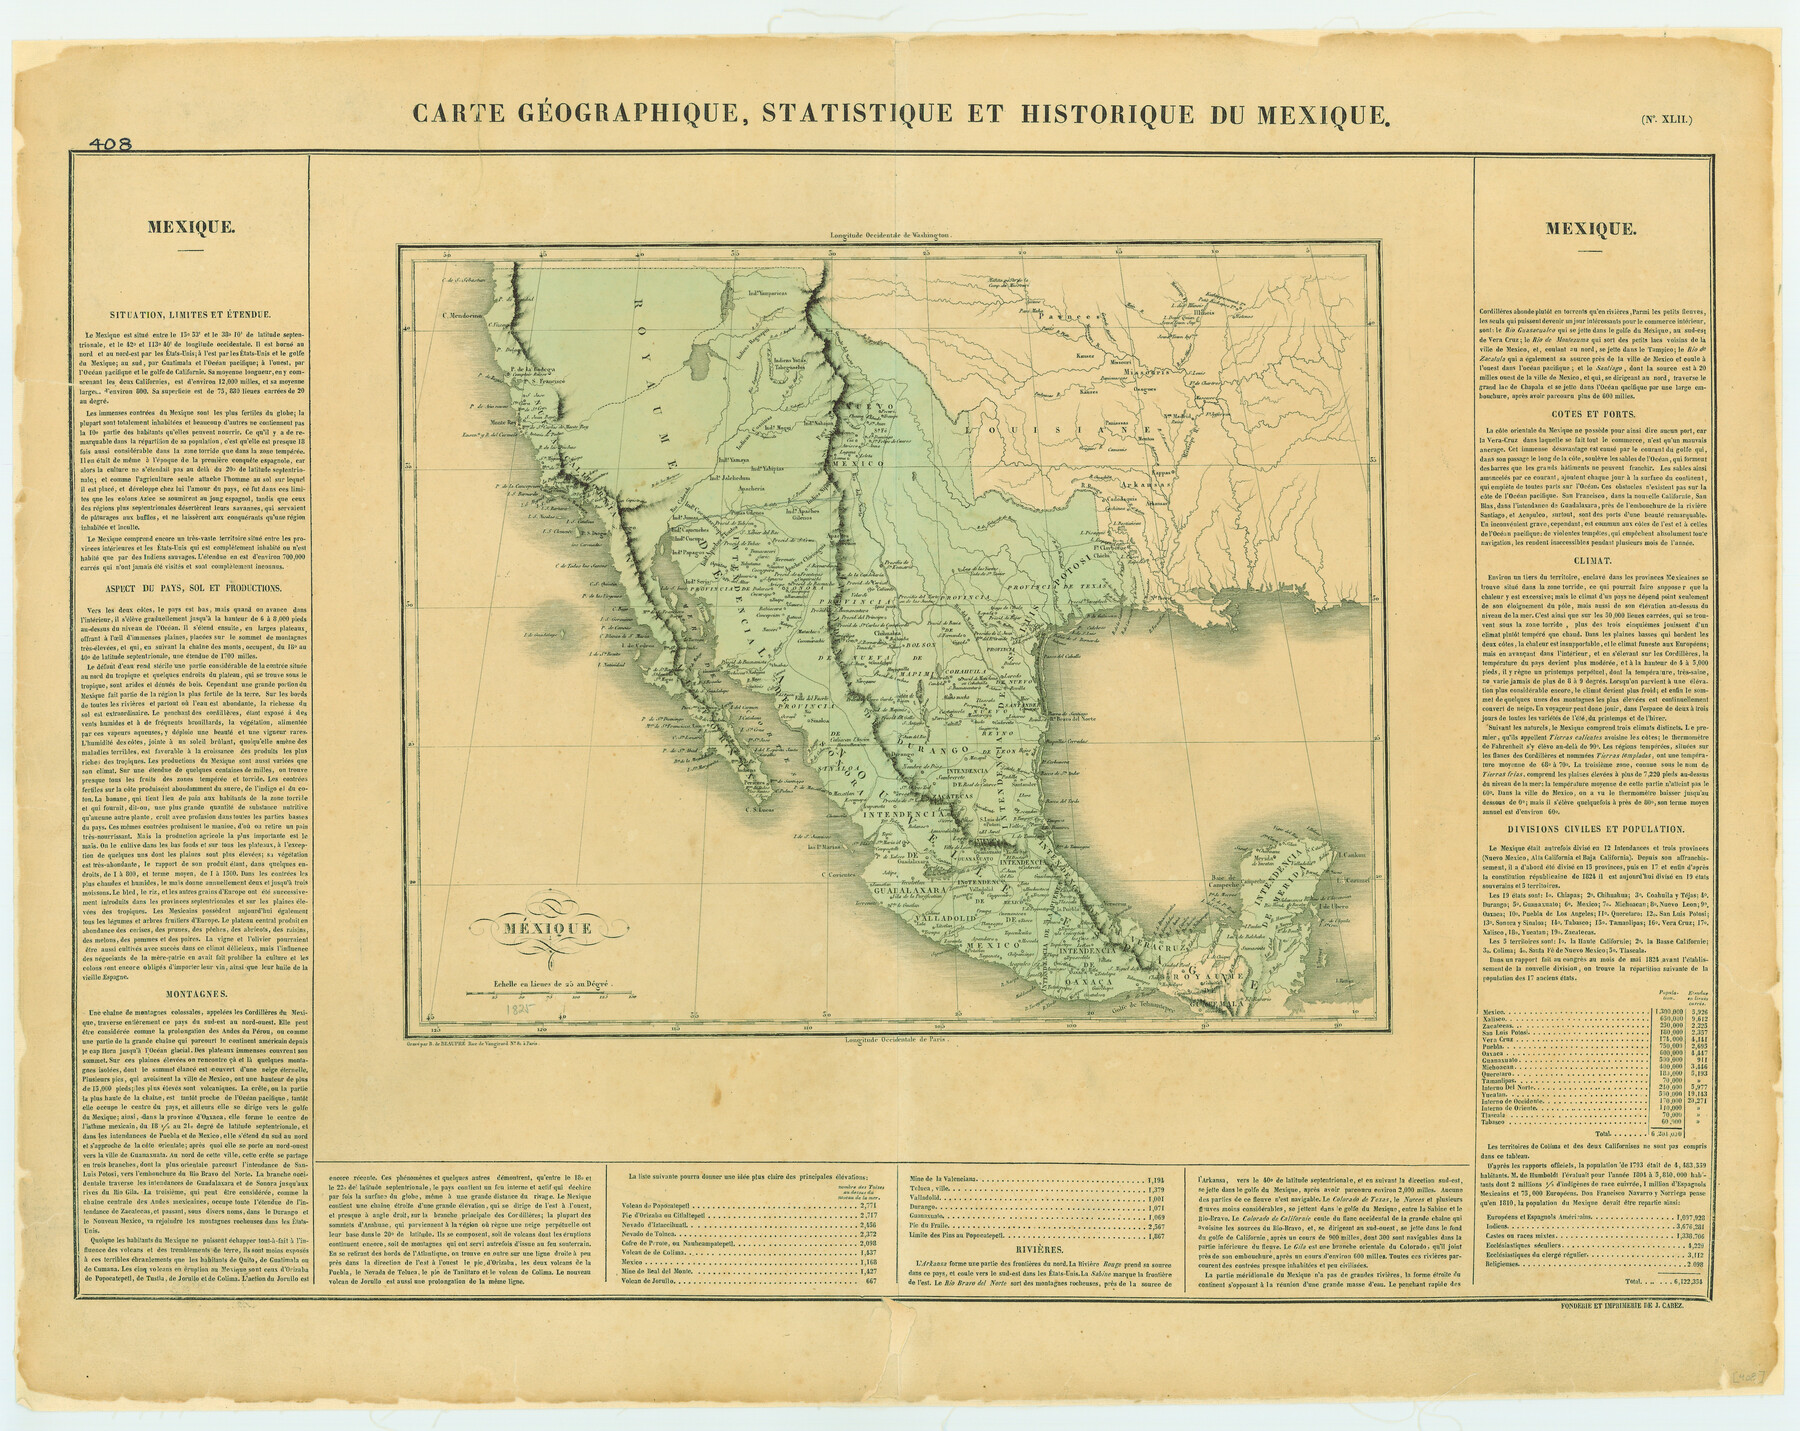 79315, Carte Geographique, Statistique et Historique du Mexique, Texas State Library and Archives